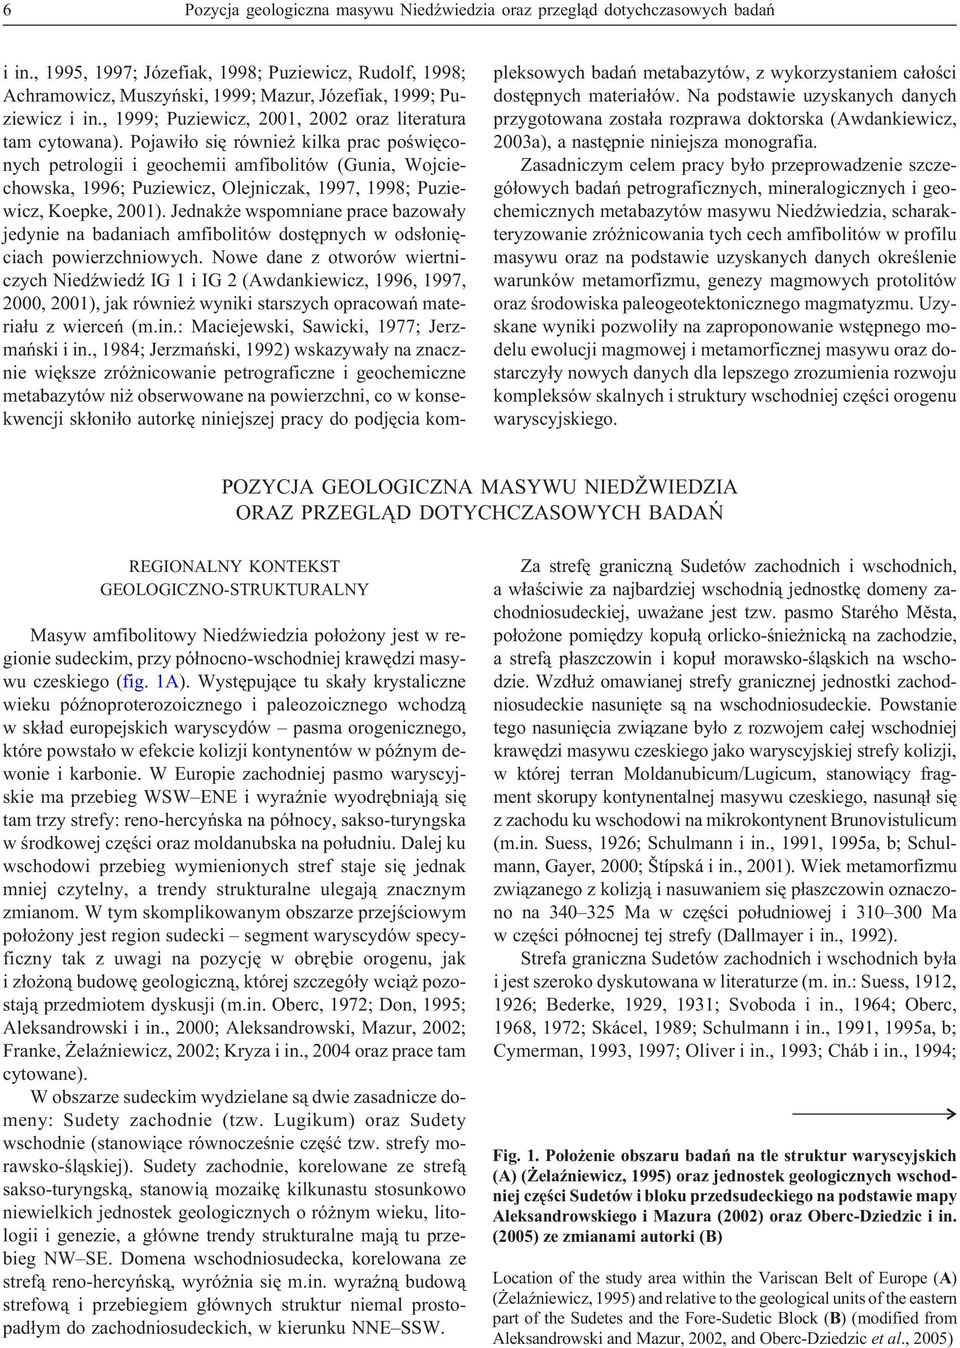 Pojawi³o siê równie kilka prac poœwiêconych petrologii i geochemii amfibolitów (Gunia, Wojciechowska, 1996; Puziewicz, Olejniczak, 1997, 1998; Puziewicz, Koepke, 2001).